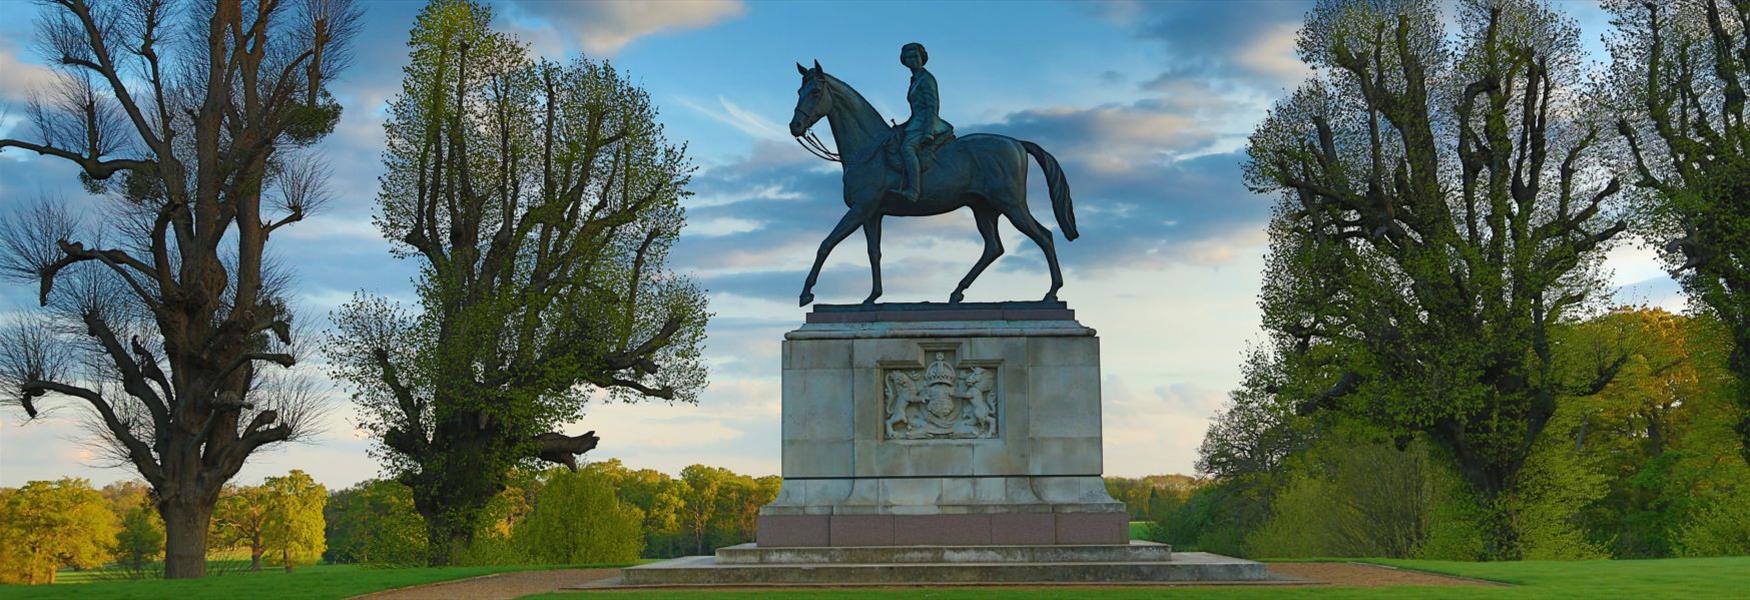 Windsor Great Park Jubilee Statue of The Queen